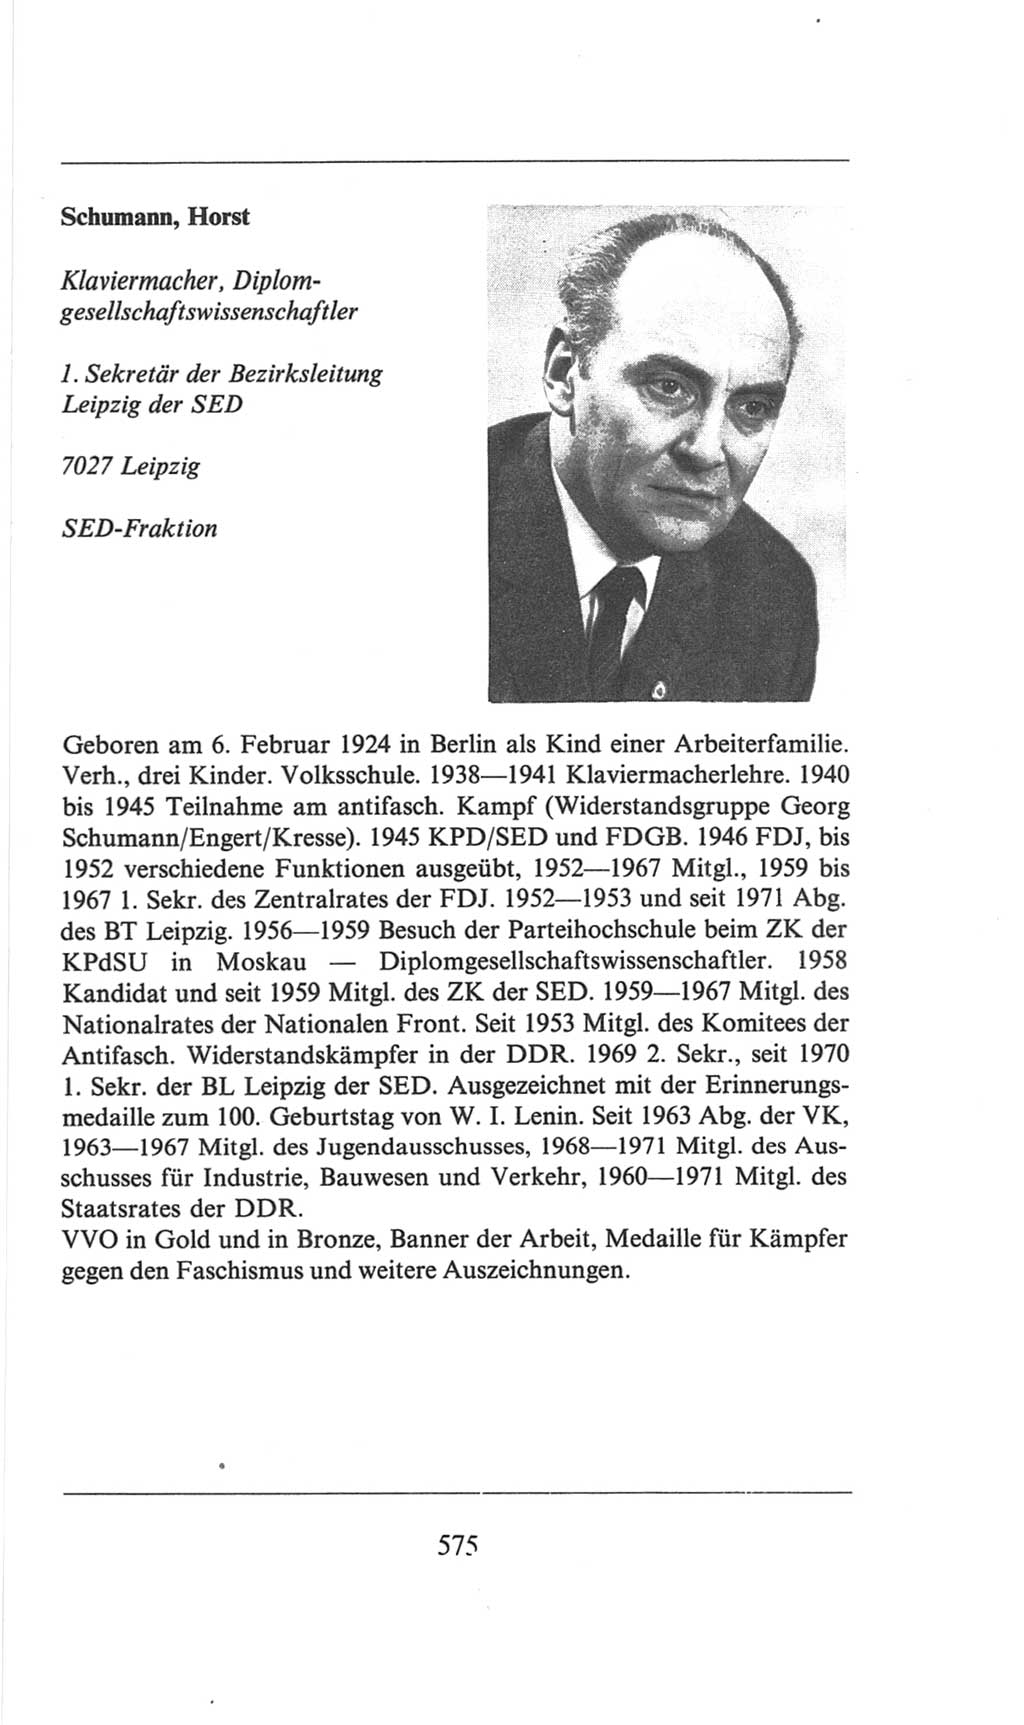 Volkskammer (VK) der Deutschen Demokratischen Republik (DDR), 6. Wahlperiode 1971-1976, Seite 575 (VK. DDR 6. WP. 1971-1976, S. 575)